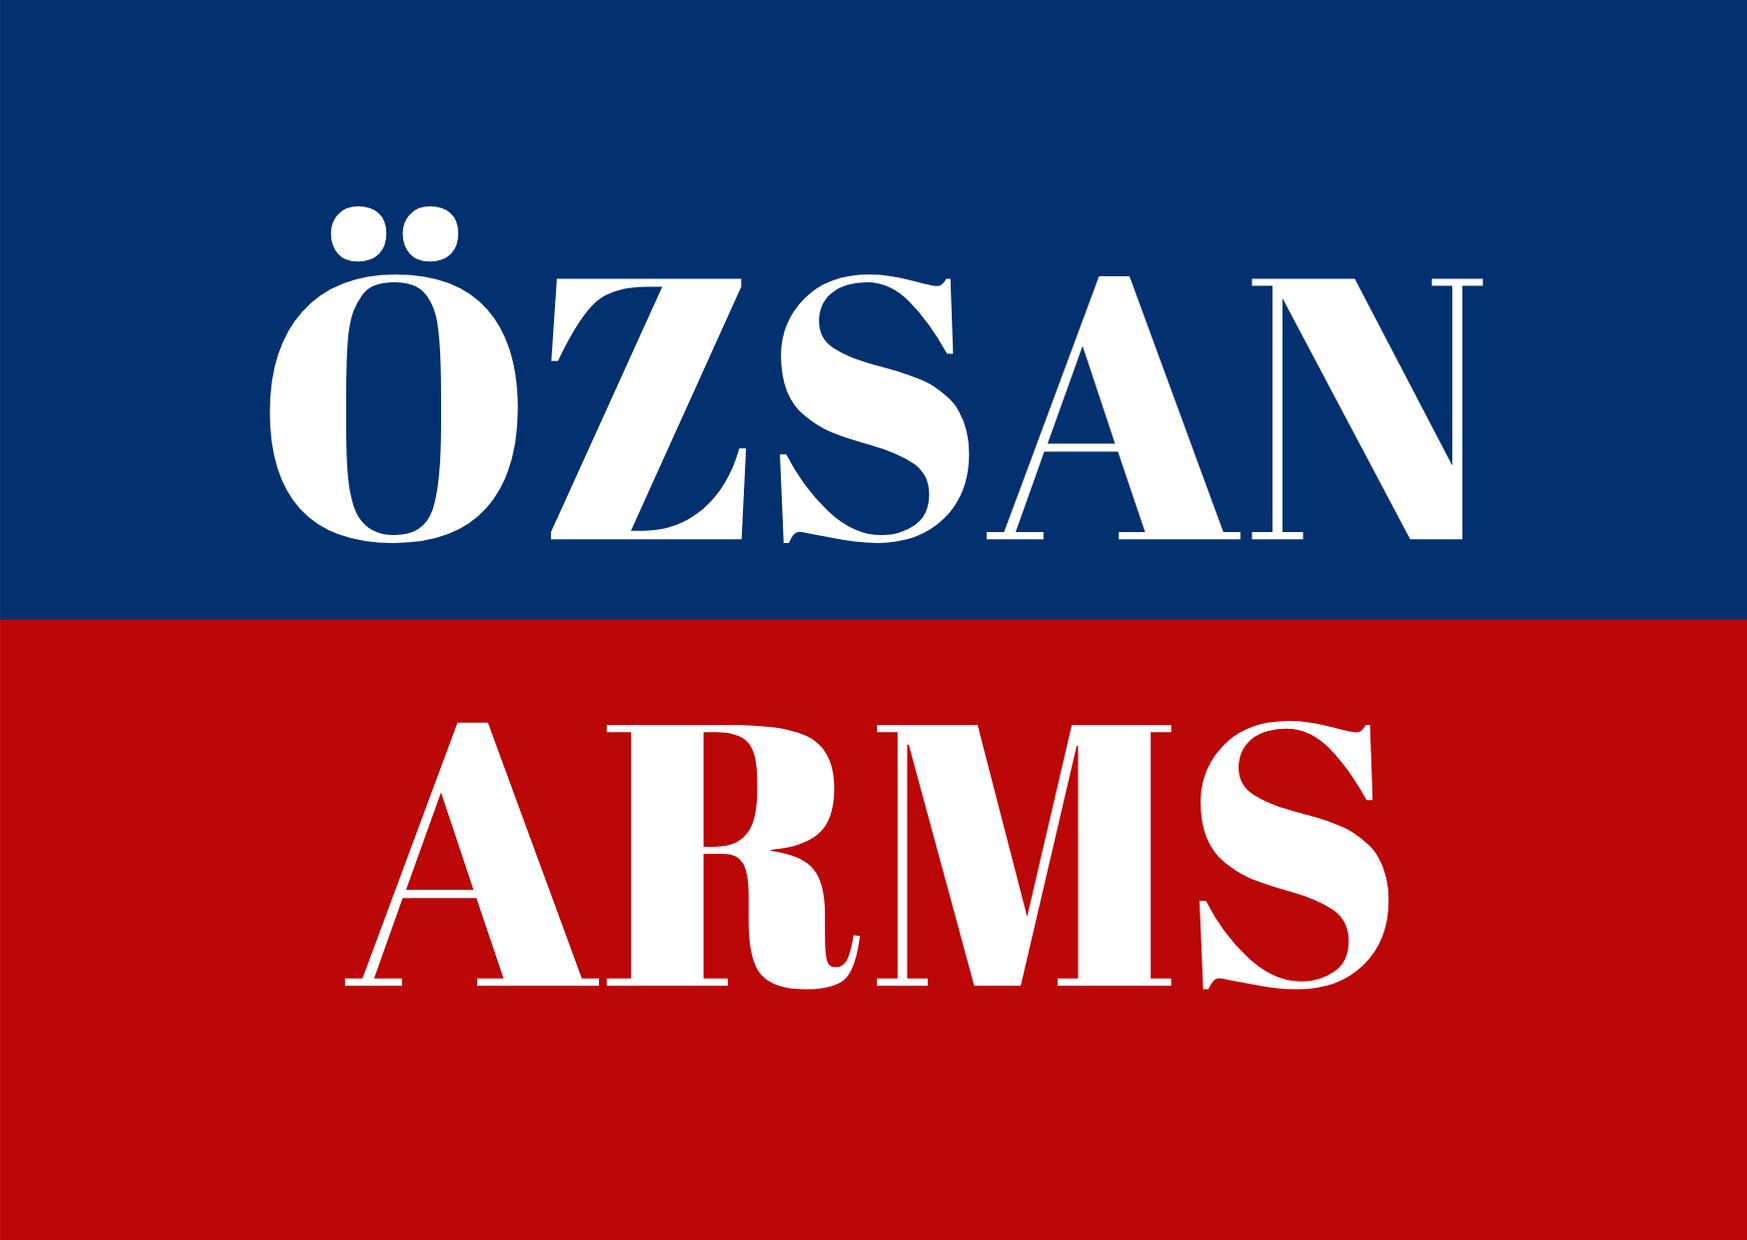 ÖZSAN ARMS